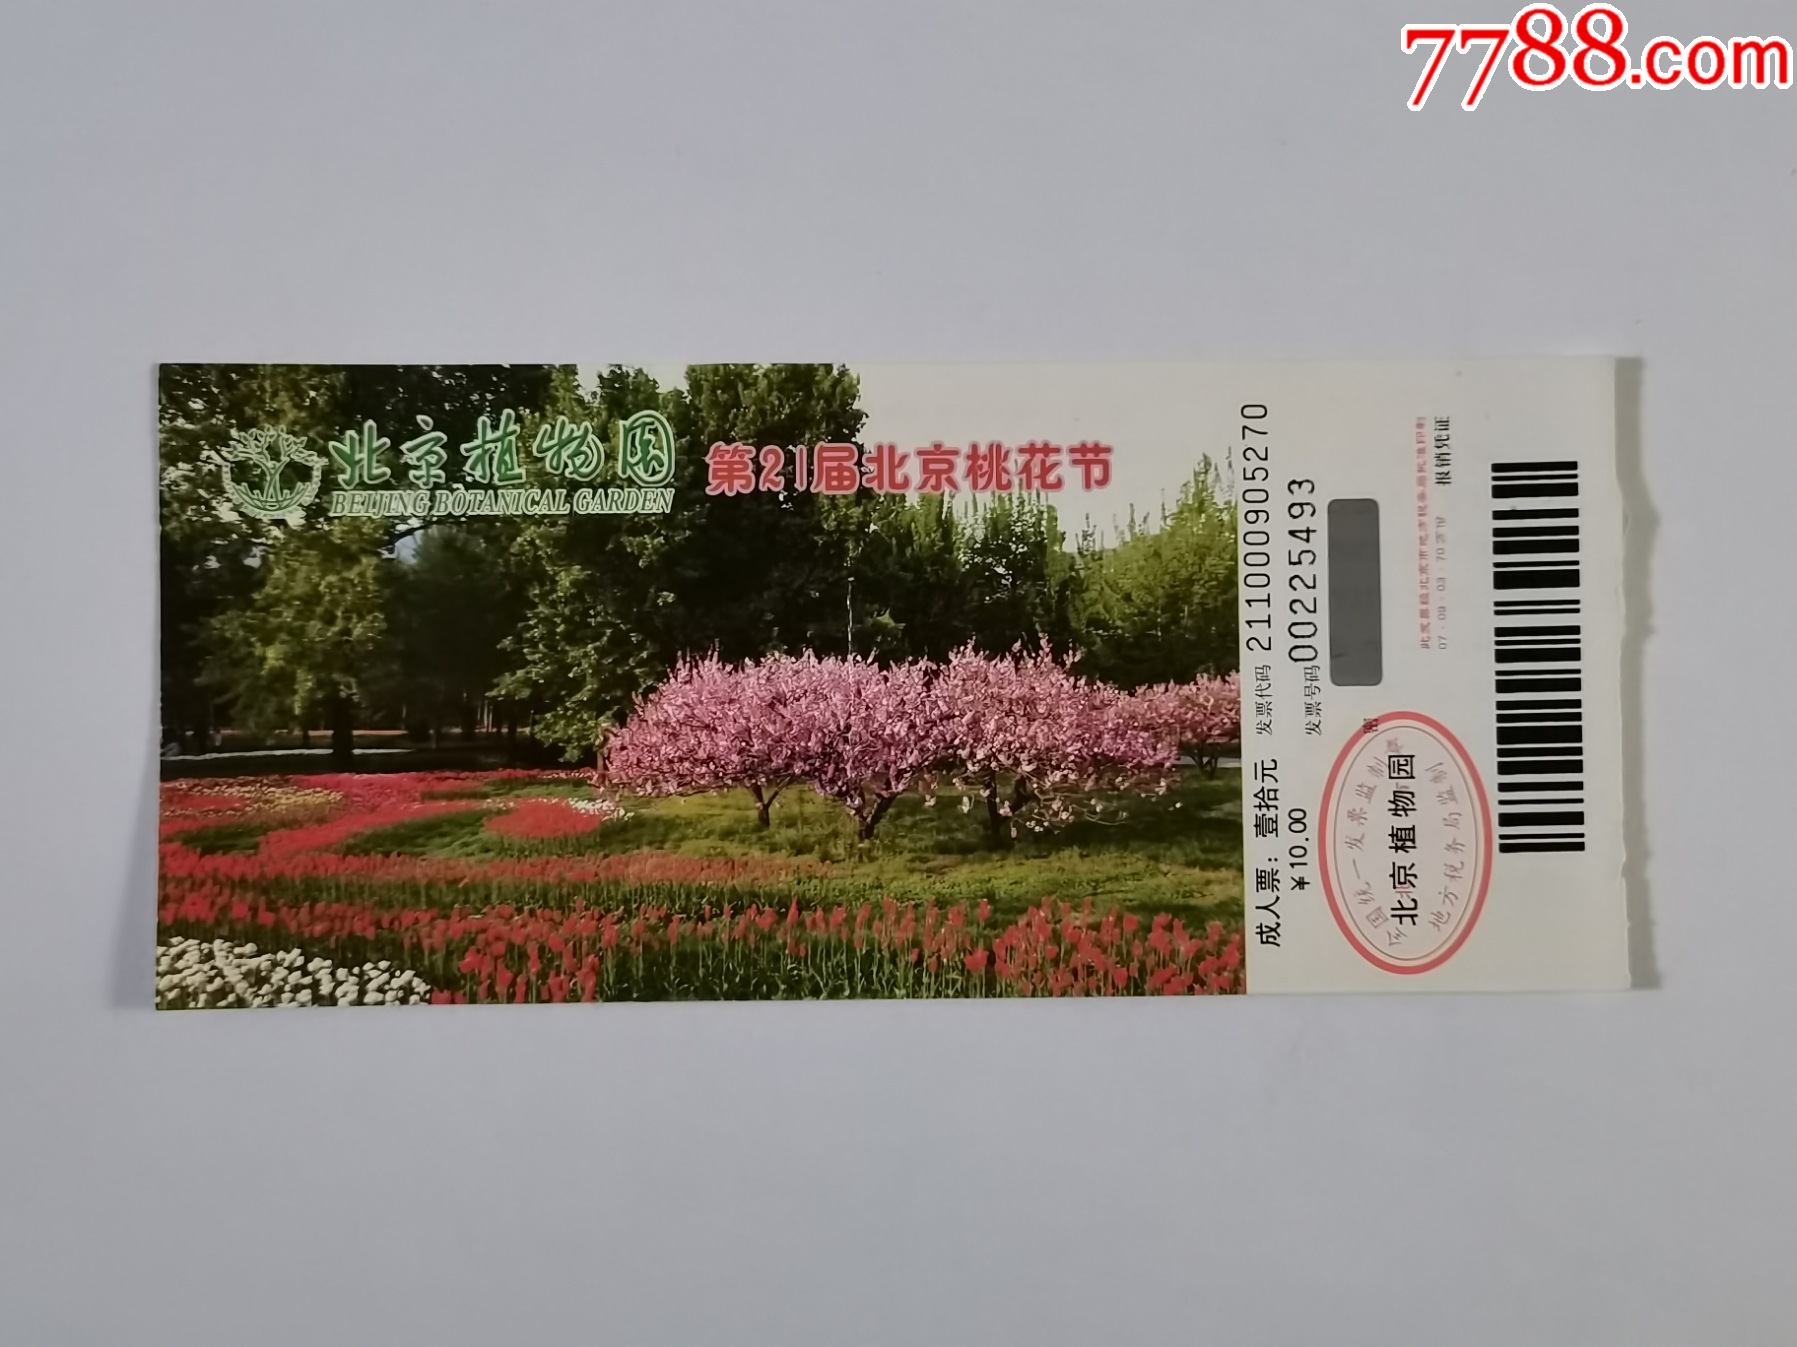 北京植物园——第21届桃花节